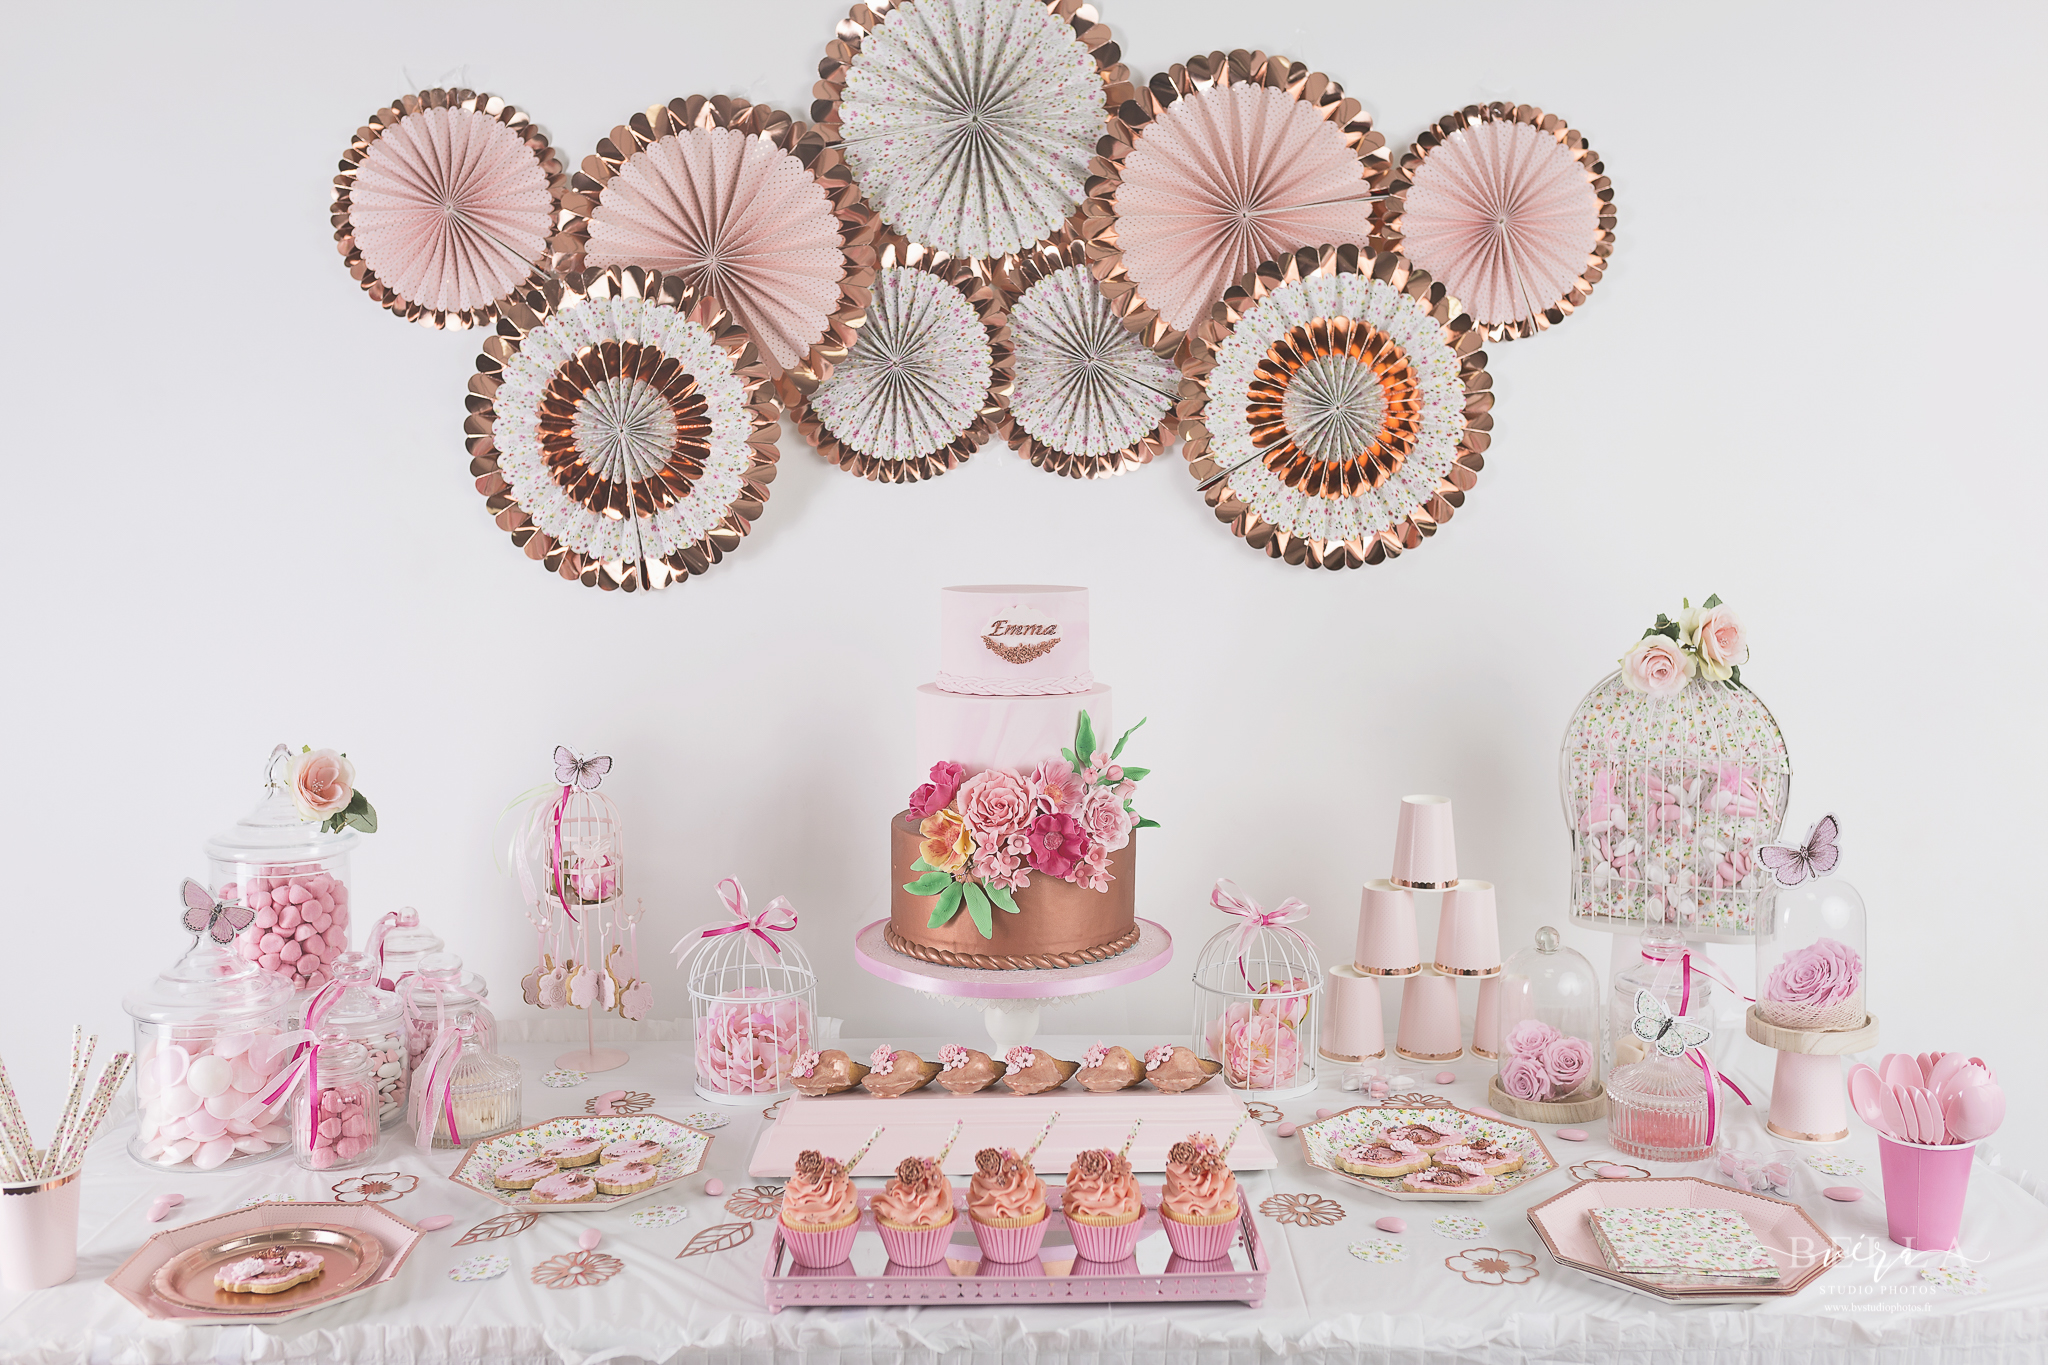 decoration mariage decoration gâteau fanions chevron et boules papier